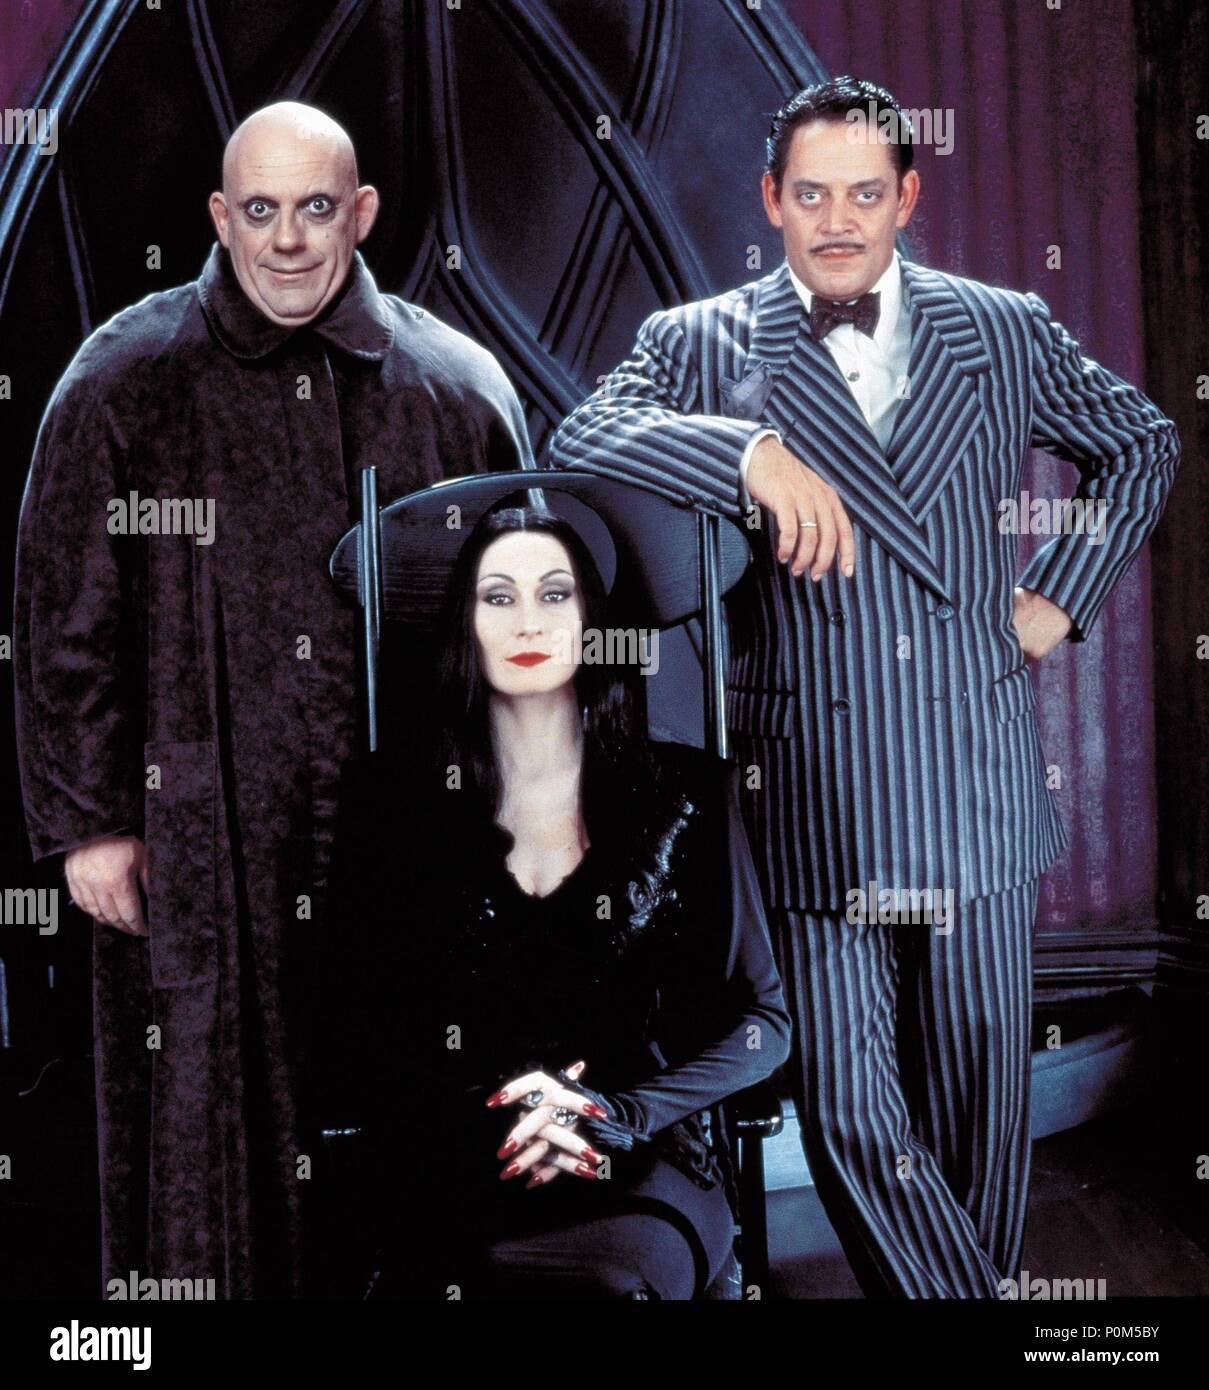 La Famille Addams Le Film